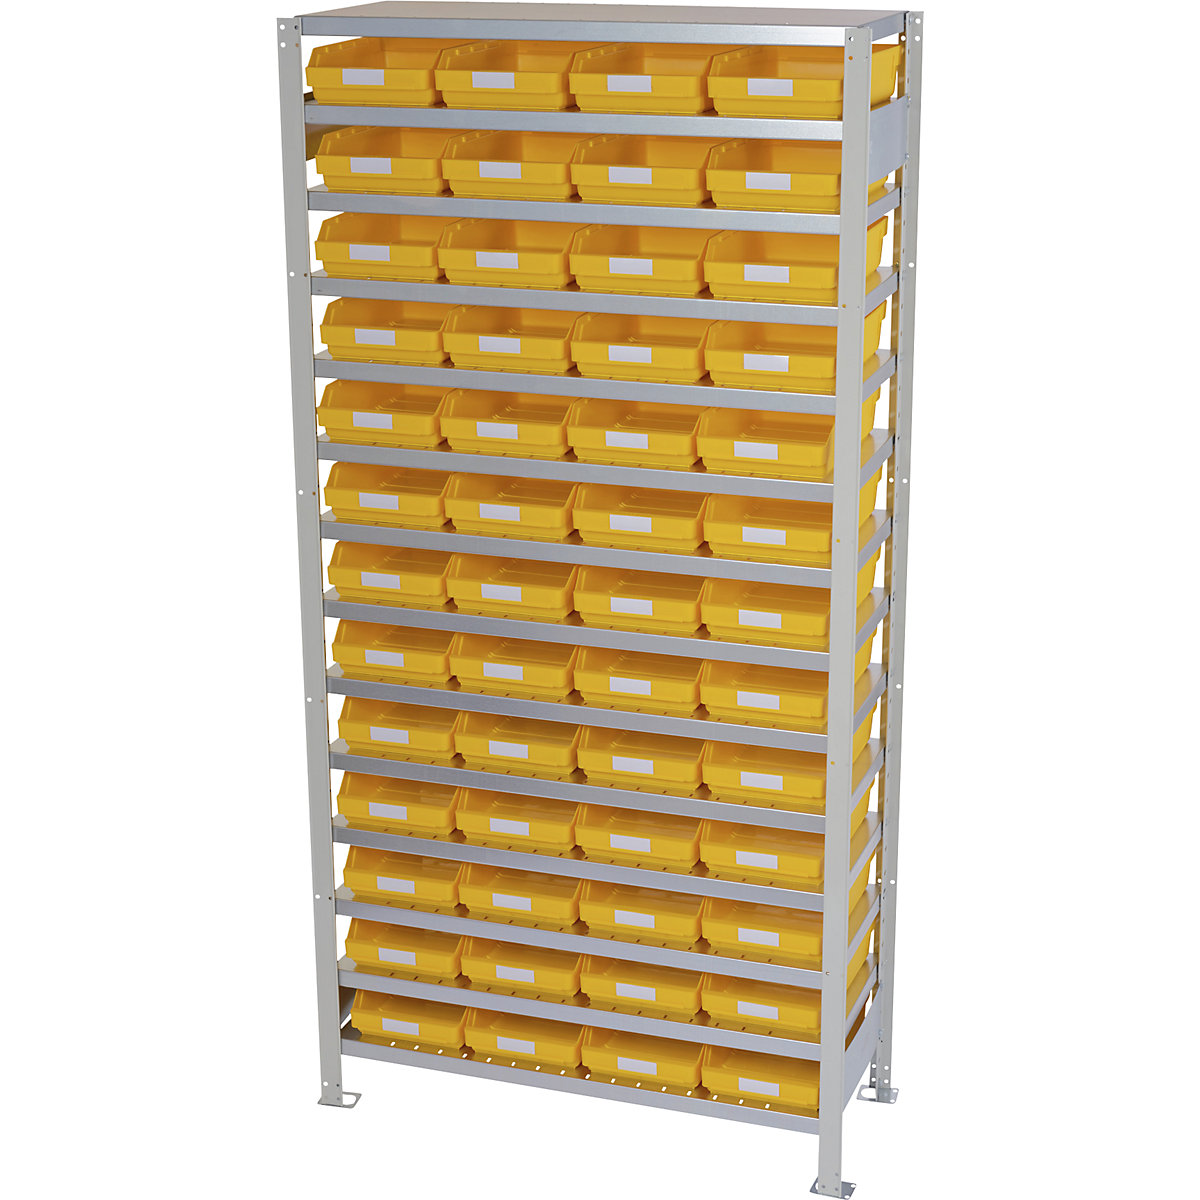 Összedugaszolós állvány dobozokkal – STEMO, állványmagasság 2100 mm, alapállvány, 300 mm mély, 52 sárga doboz-41